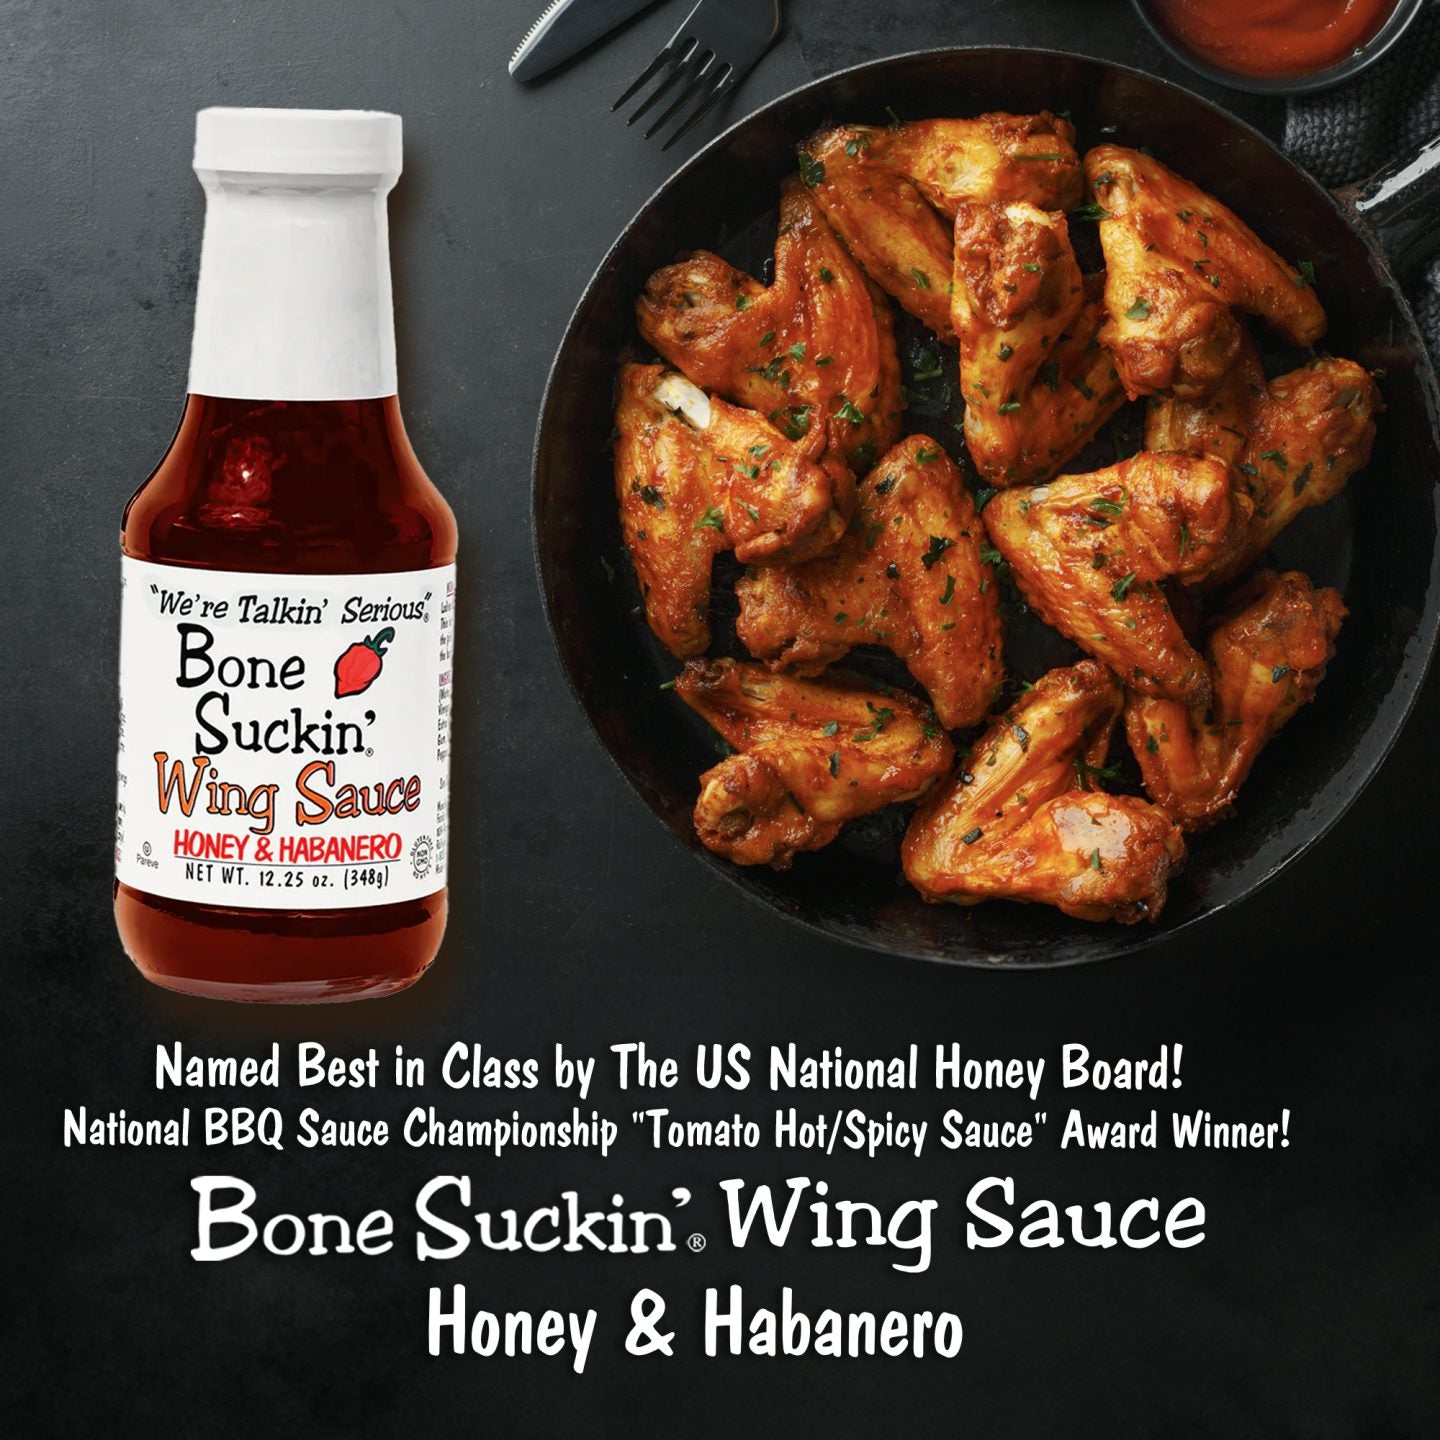 Bone Suckin'® Wing Sauce, Honey & Habanero, 12.25 oz.